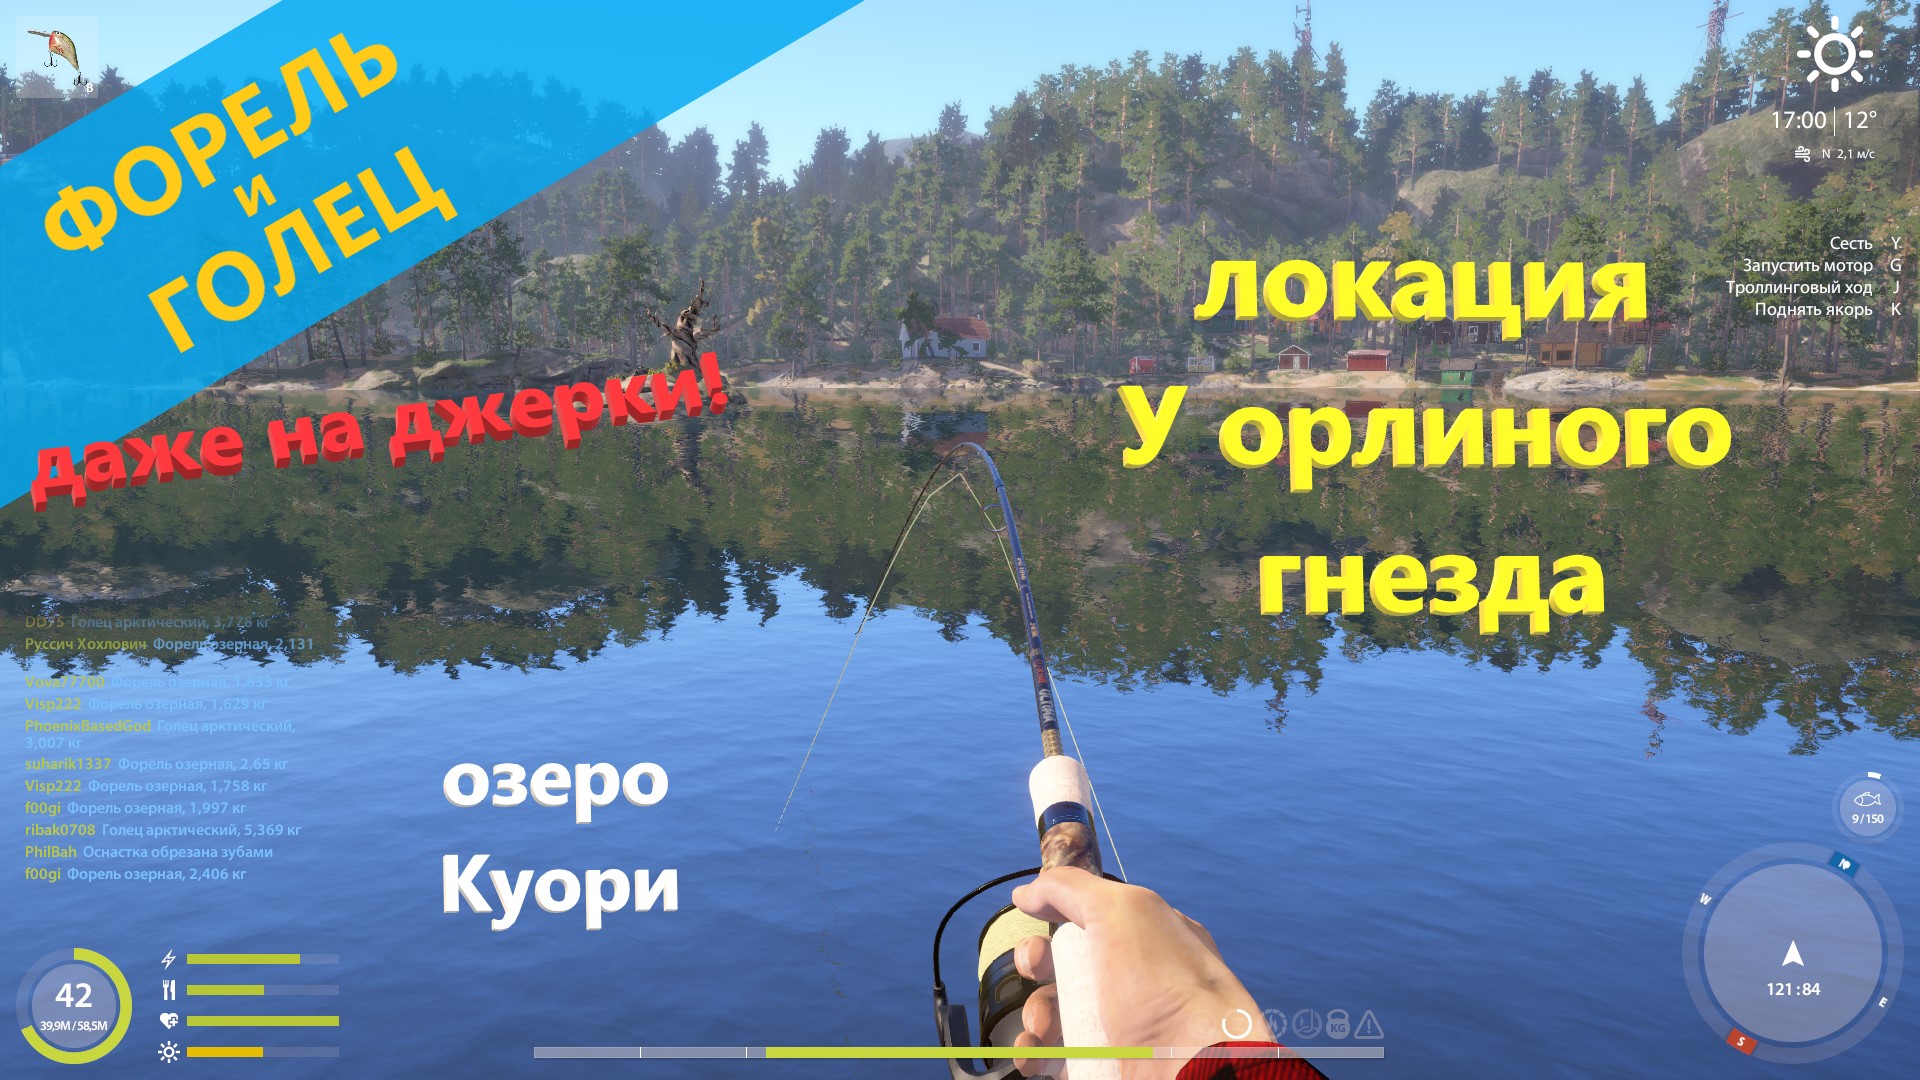 Русская рыбалка 4 - озеро Куори - Форель и голец на крэнки и не только